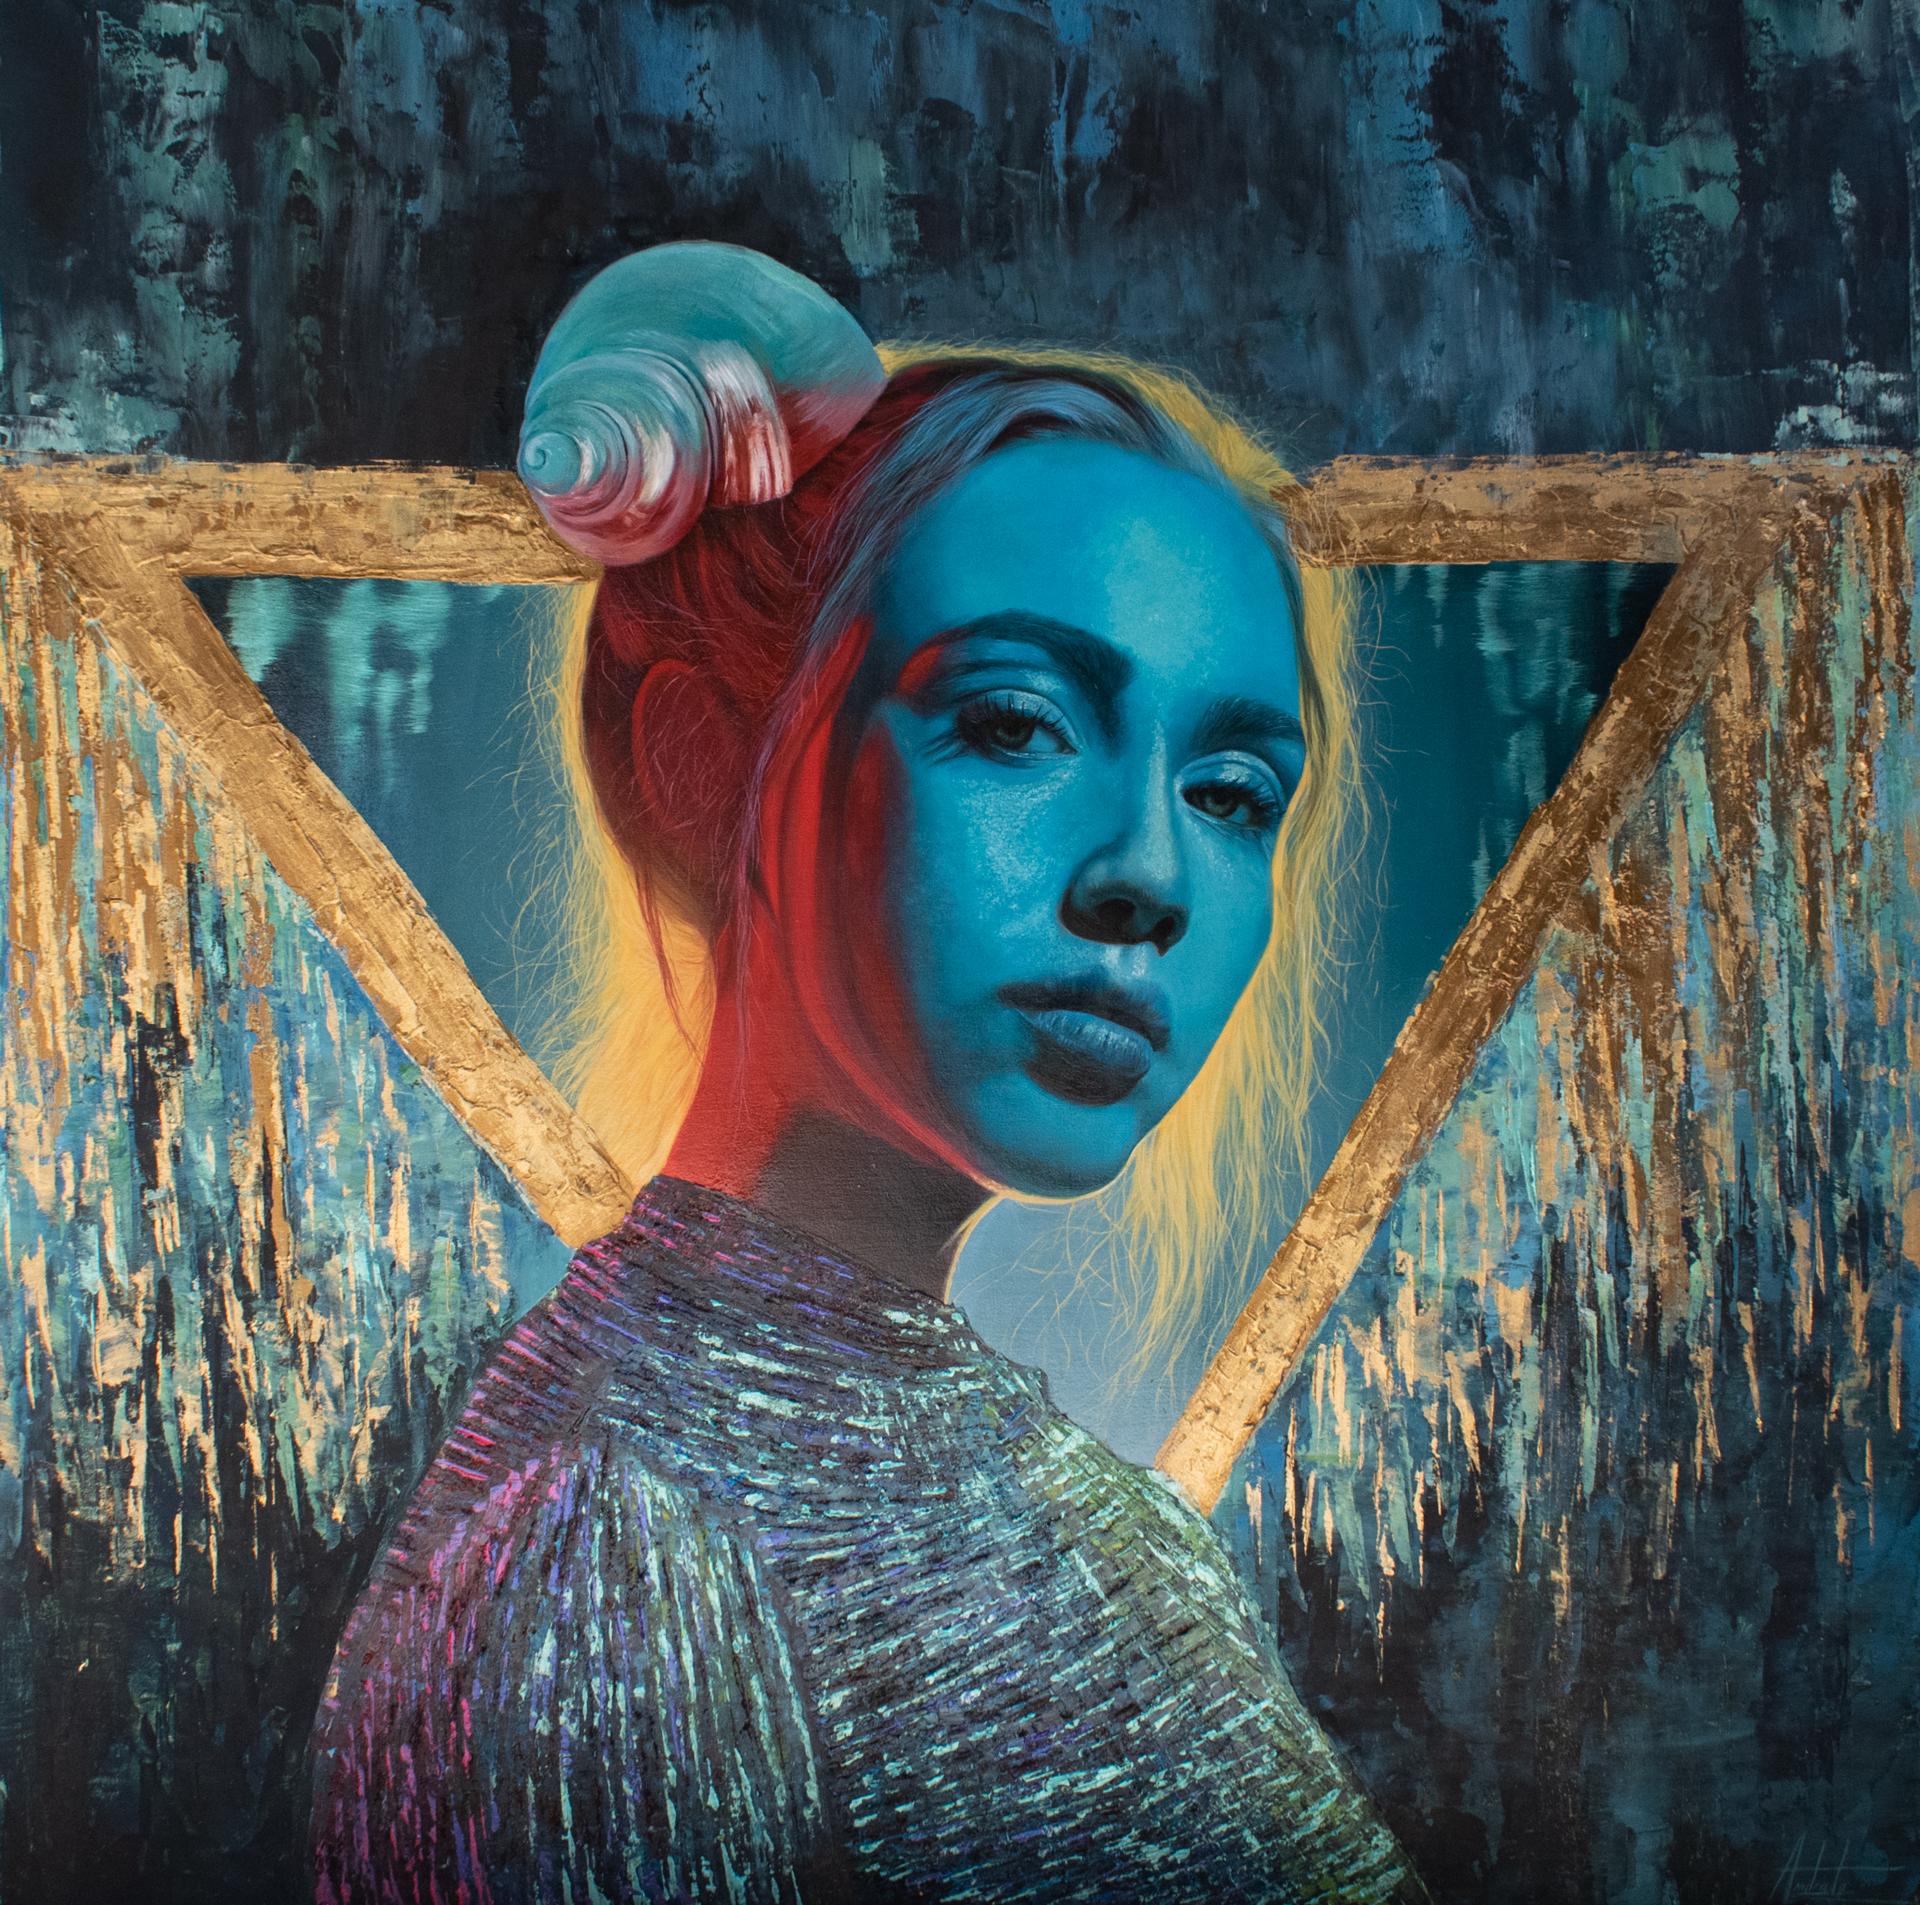 „Blue Aura“ – Gemälde in Mischtechnik von Andrada Trapnell, ätherisches weibliches Porträt